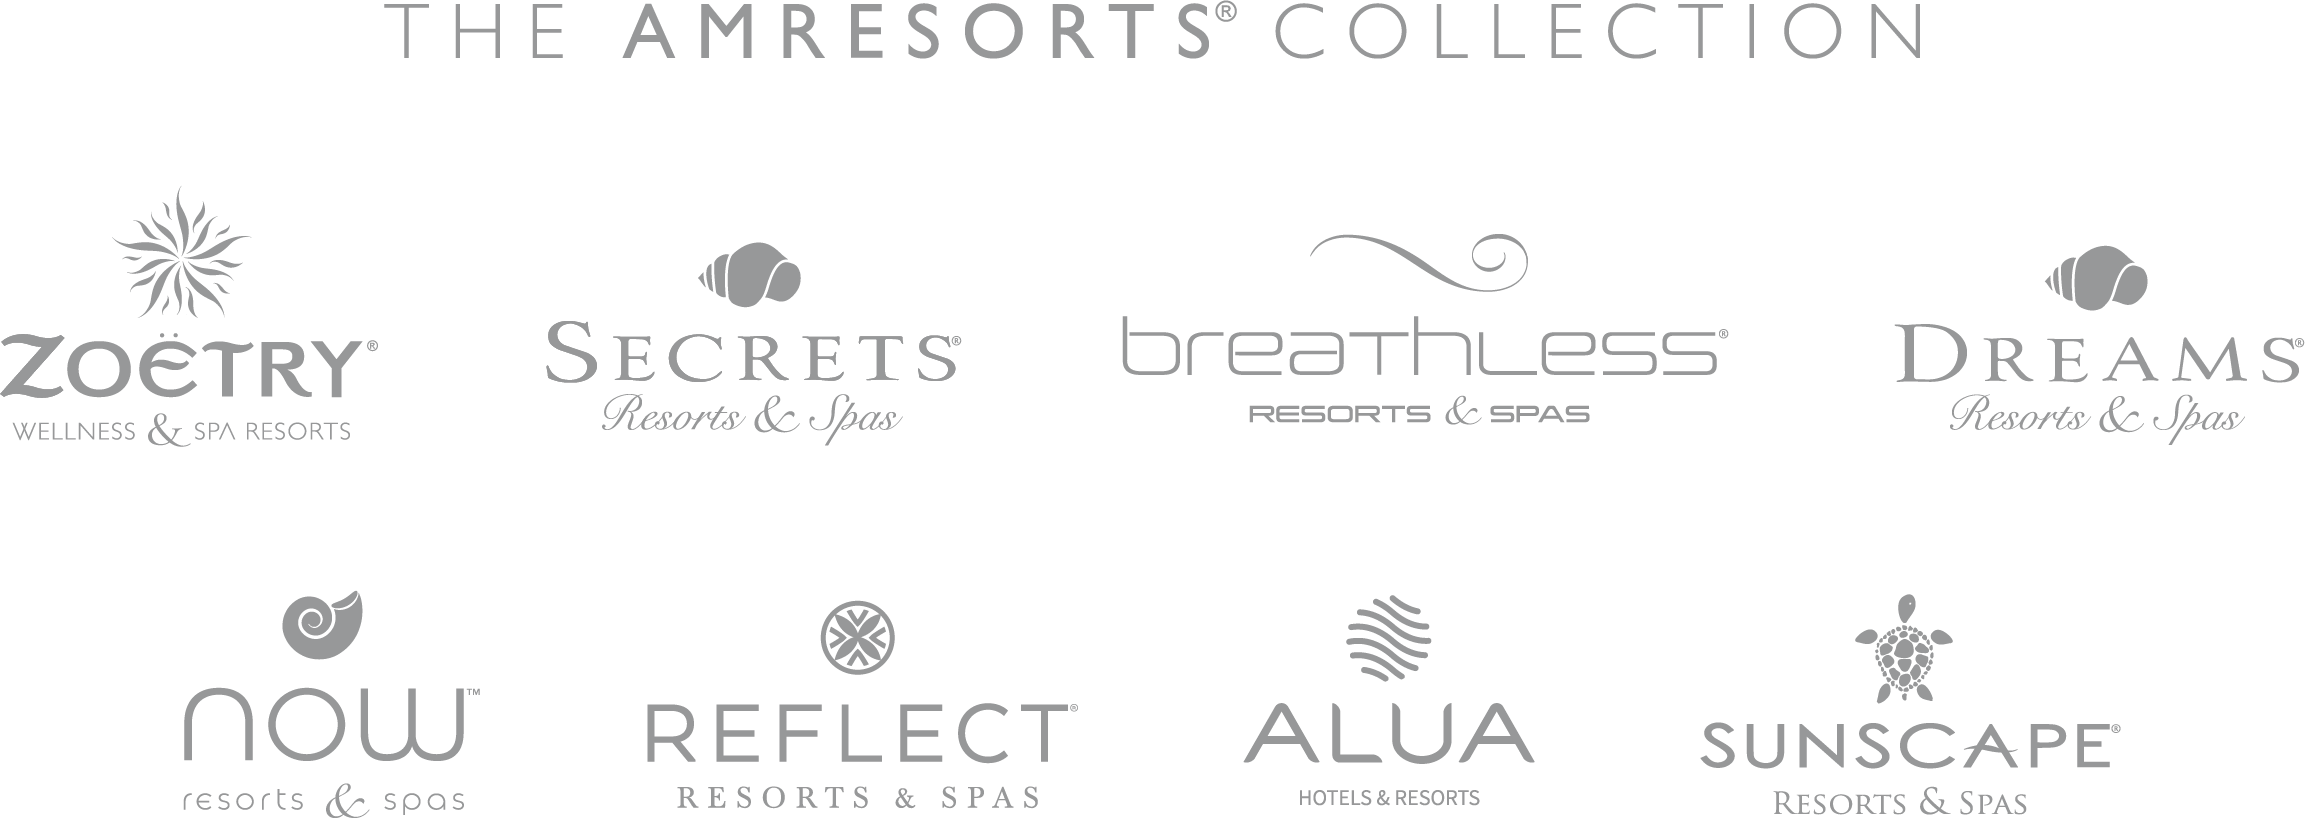 logo AM Resorts .png